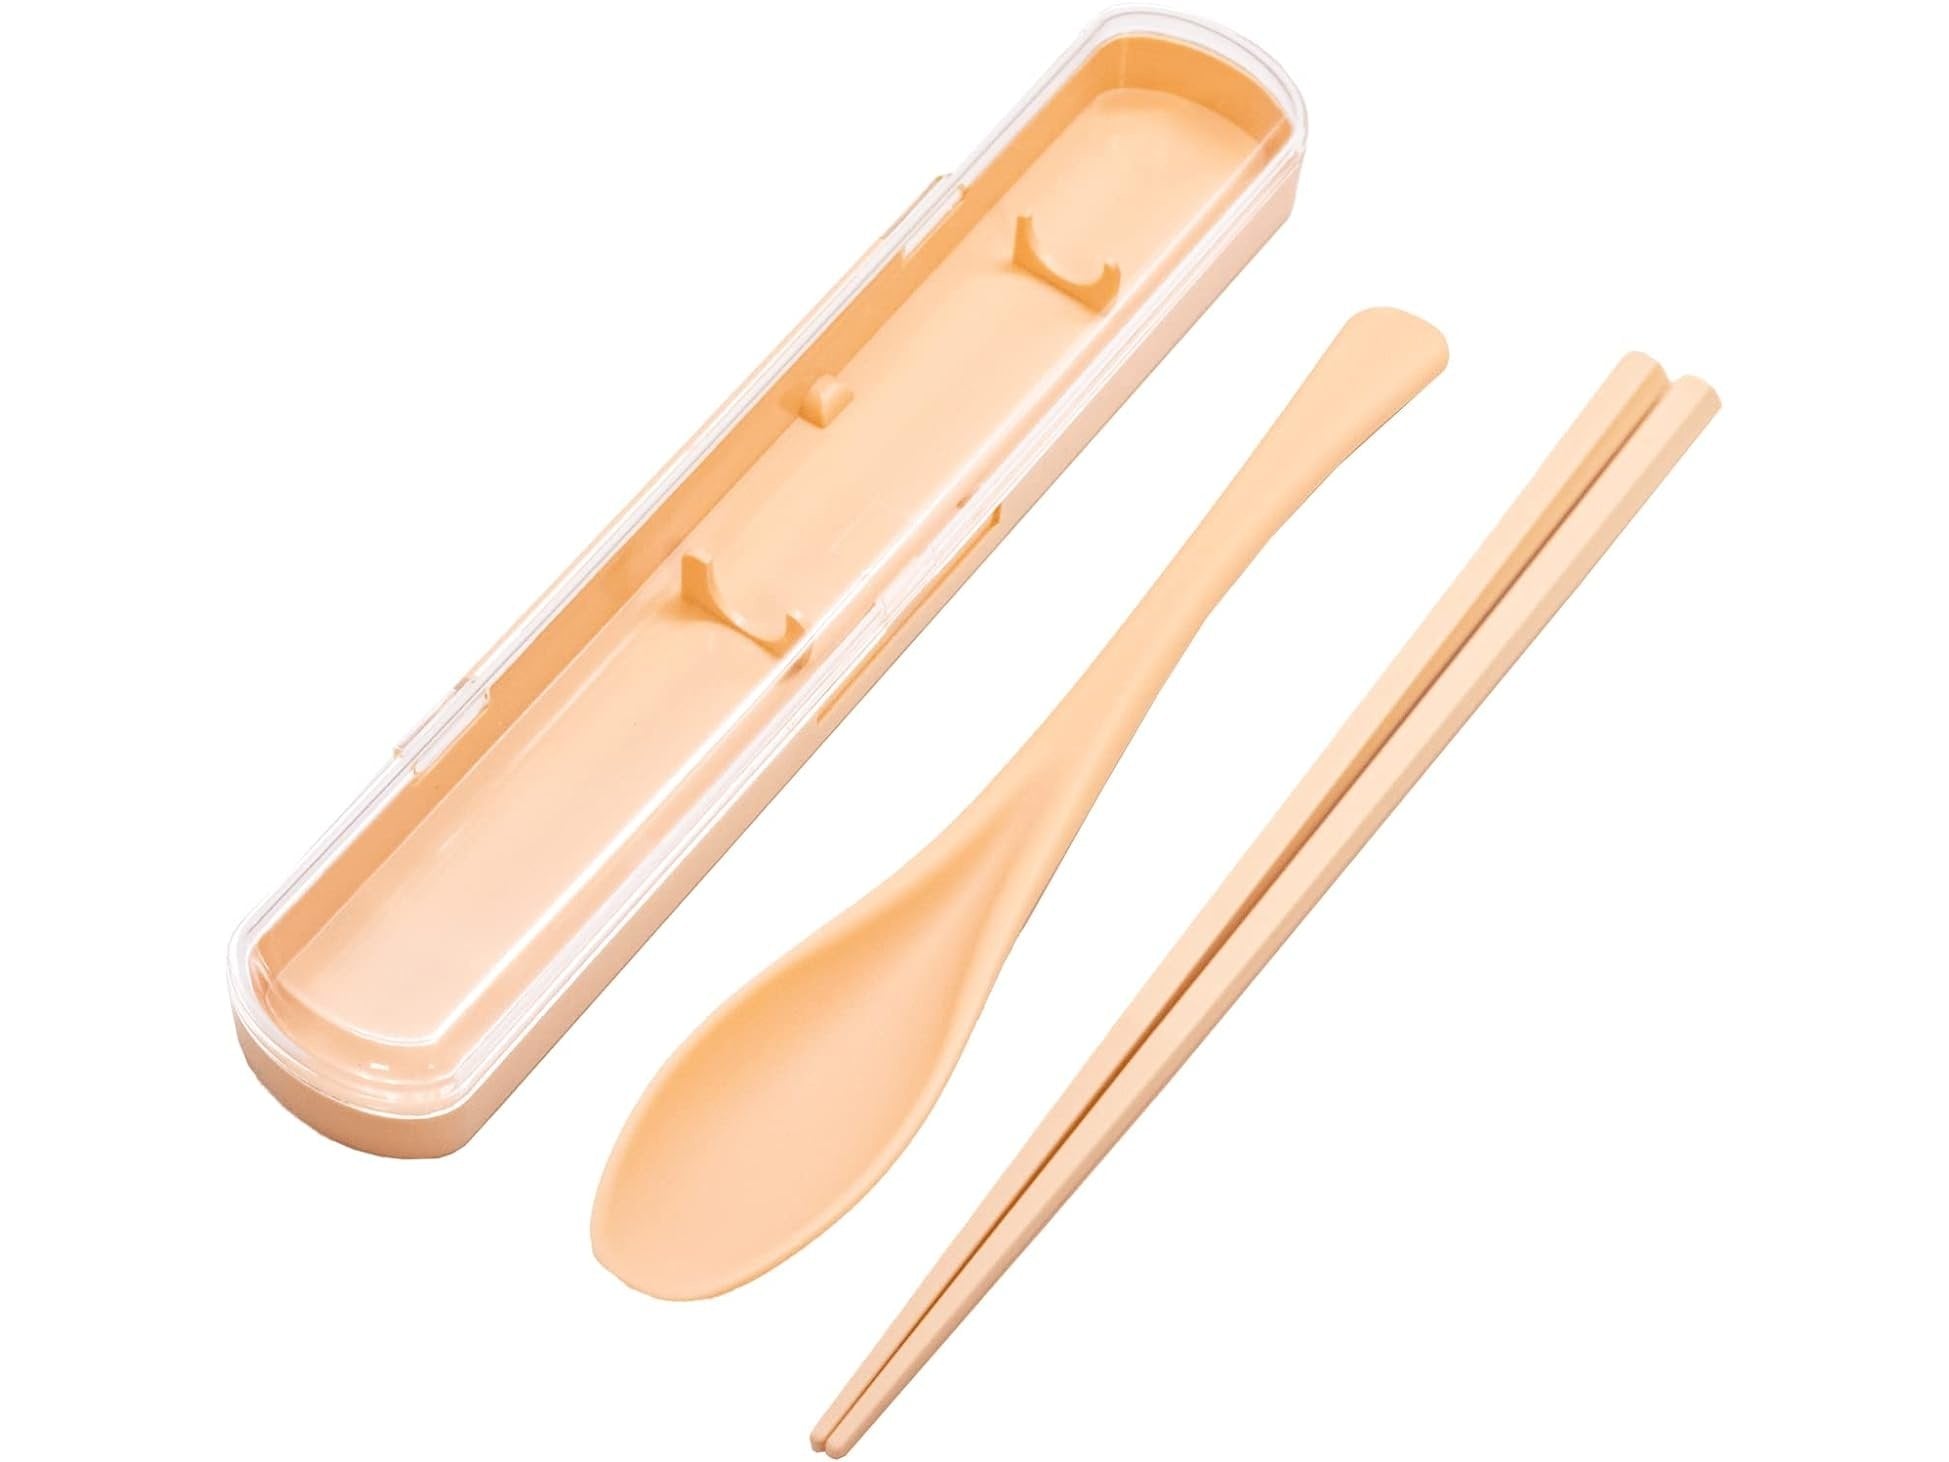 Sun Antibacterial Chopsticks and Spoon Combo Set